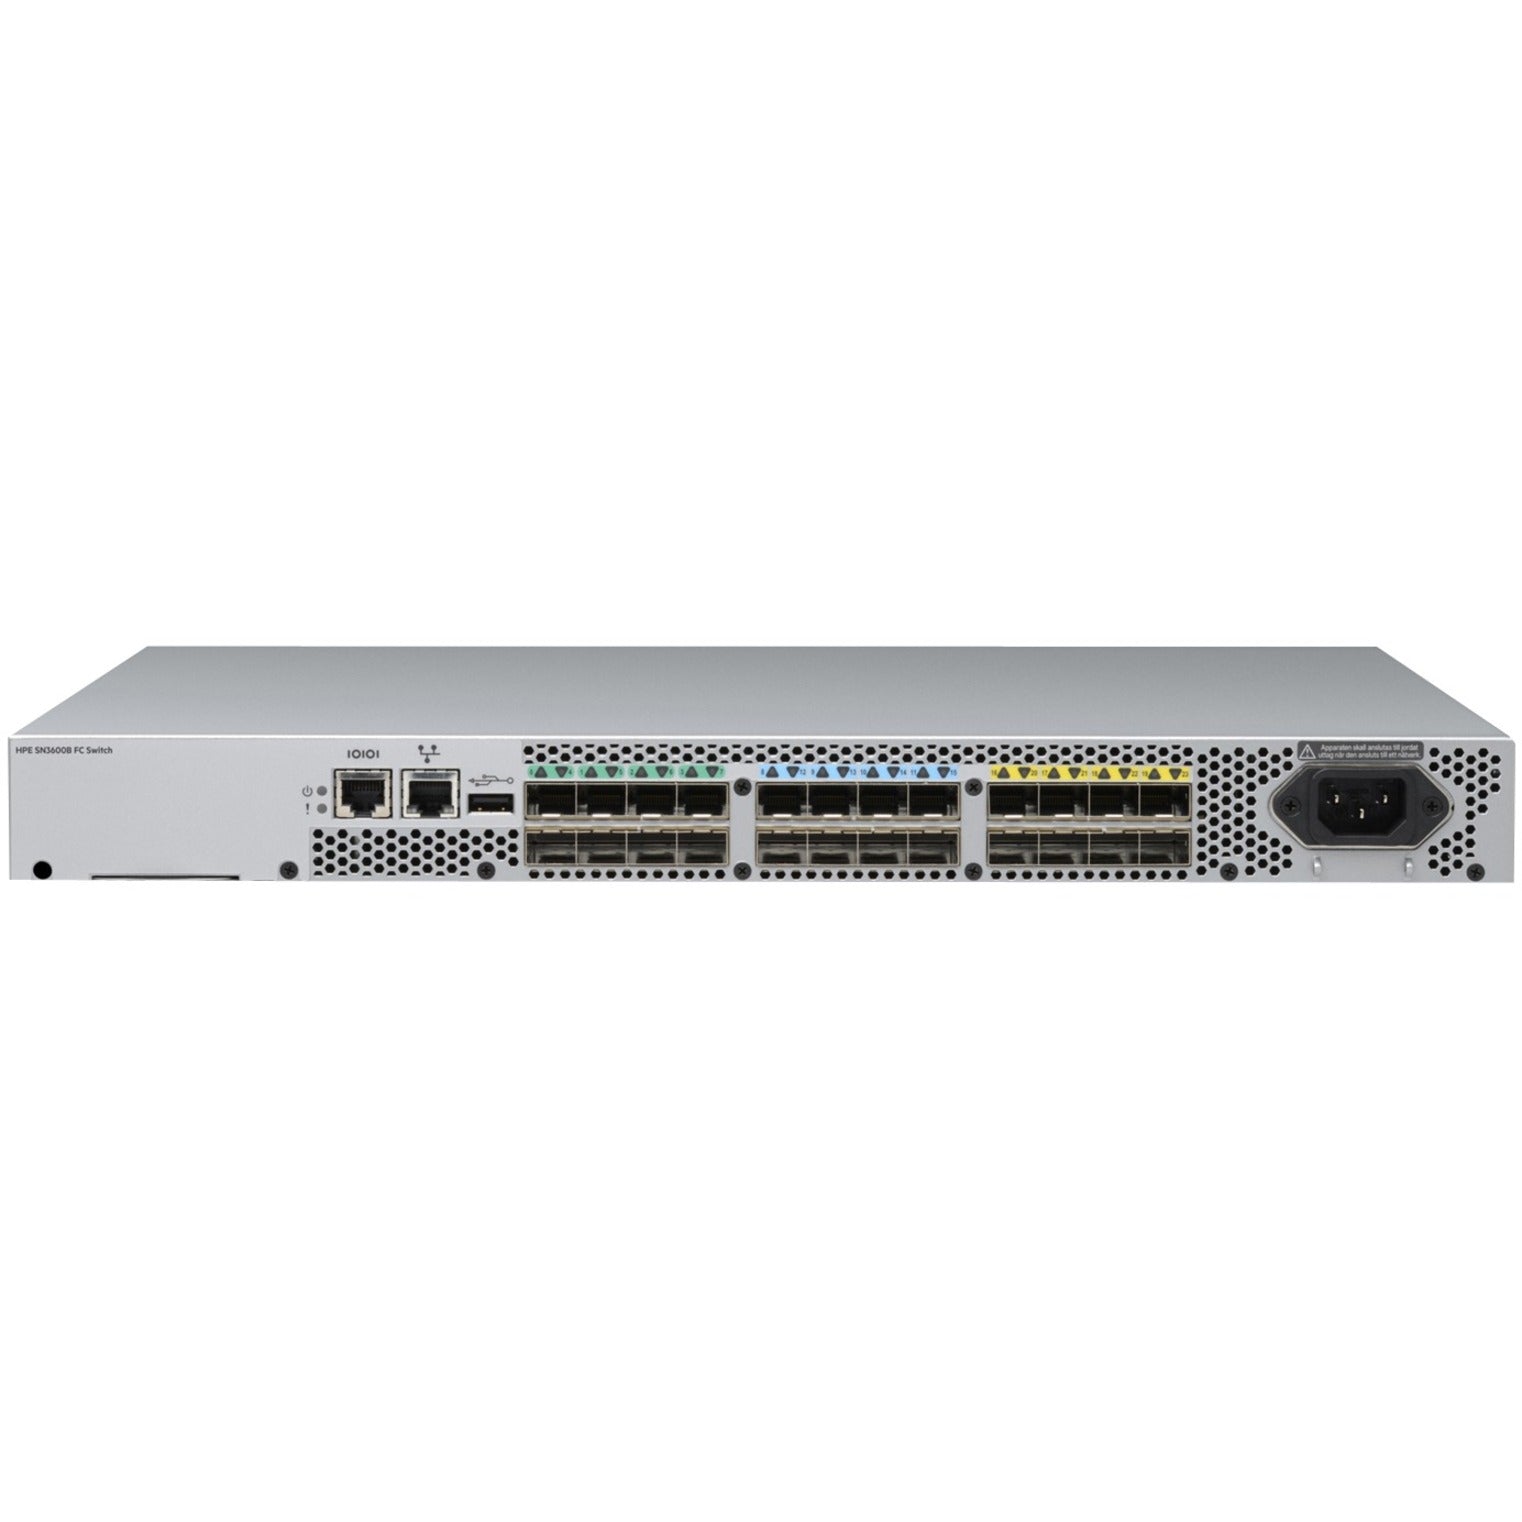 HPE R4G55B SN3600B 16Gb 24/8 8p SW SFP+ FC Switch, High-Speed Fibre Channel Connectivity